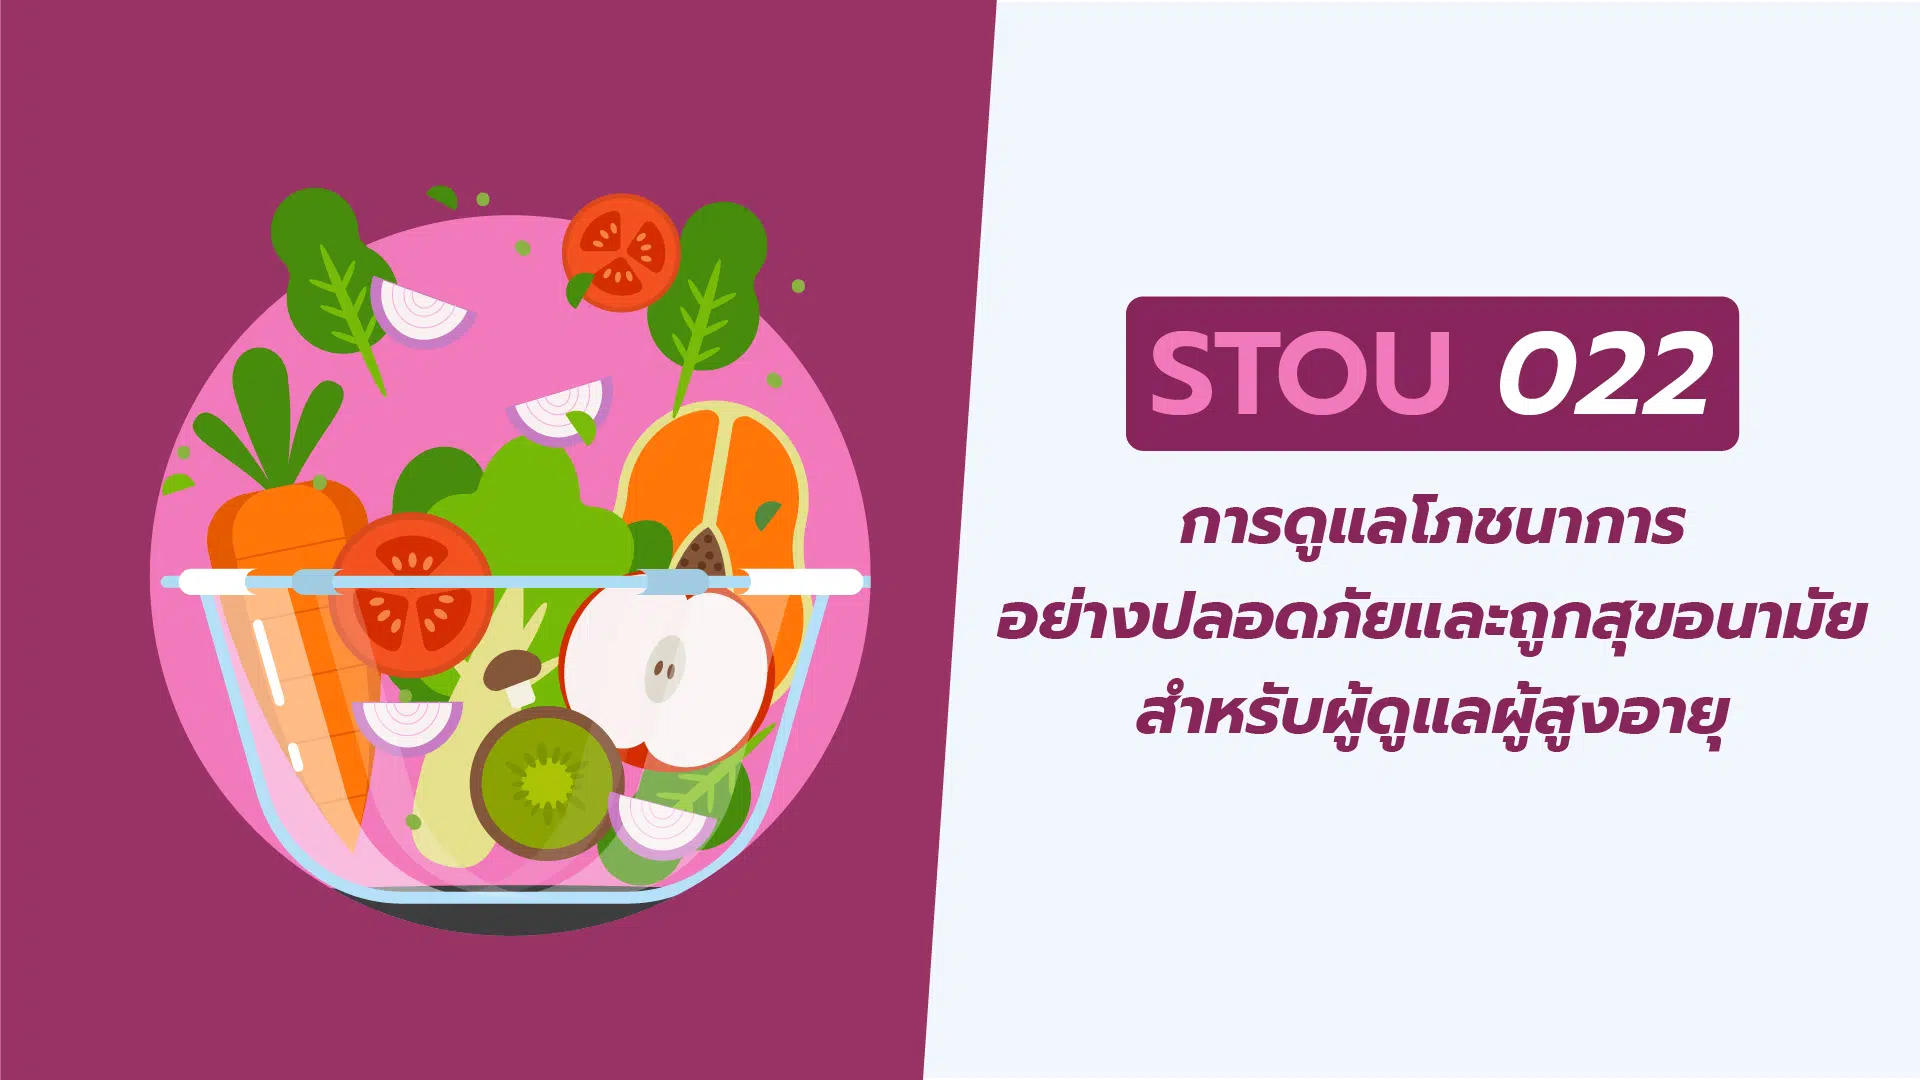 การดูแลโภชนาการอย่างปลอดภัยและถูกสุขอนามัยฯ (STOU022)